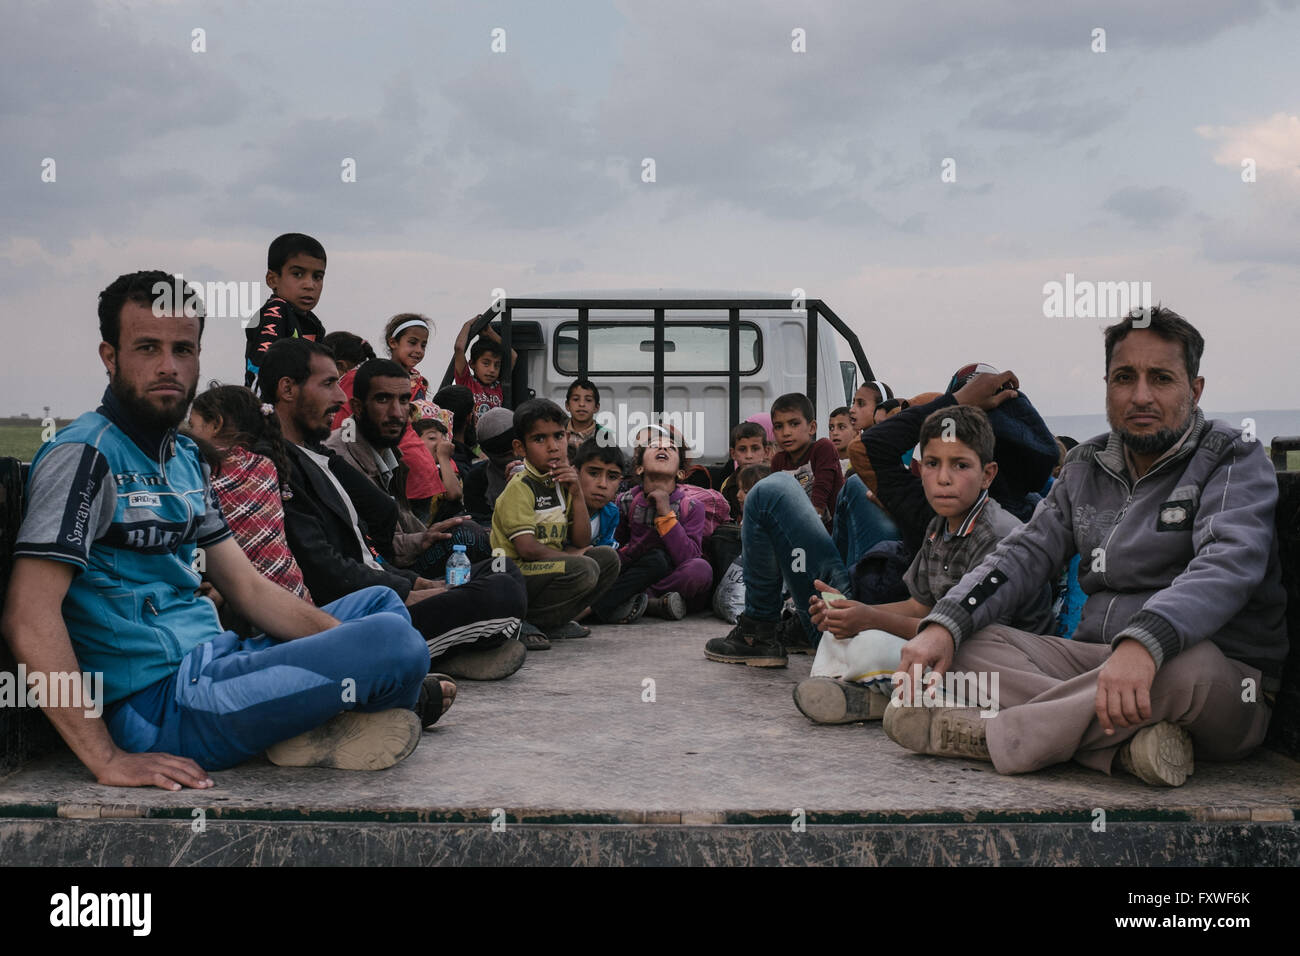 Ayuda Peshmergas refugiees huyendo de Mosul - 07/04/2016 - Irak / Mosul - la gente espera en la furgoneta que les llevará a los refugiados Foto de stock